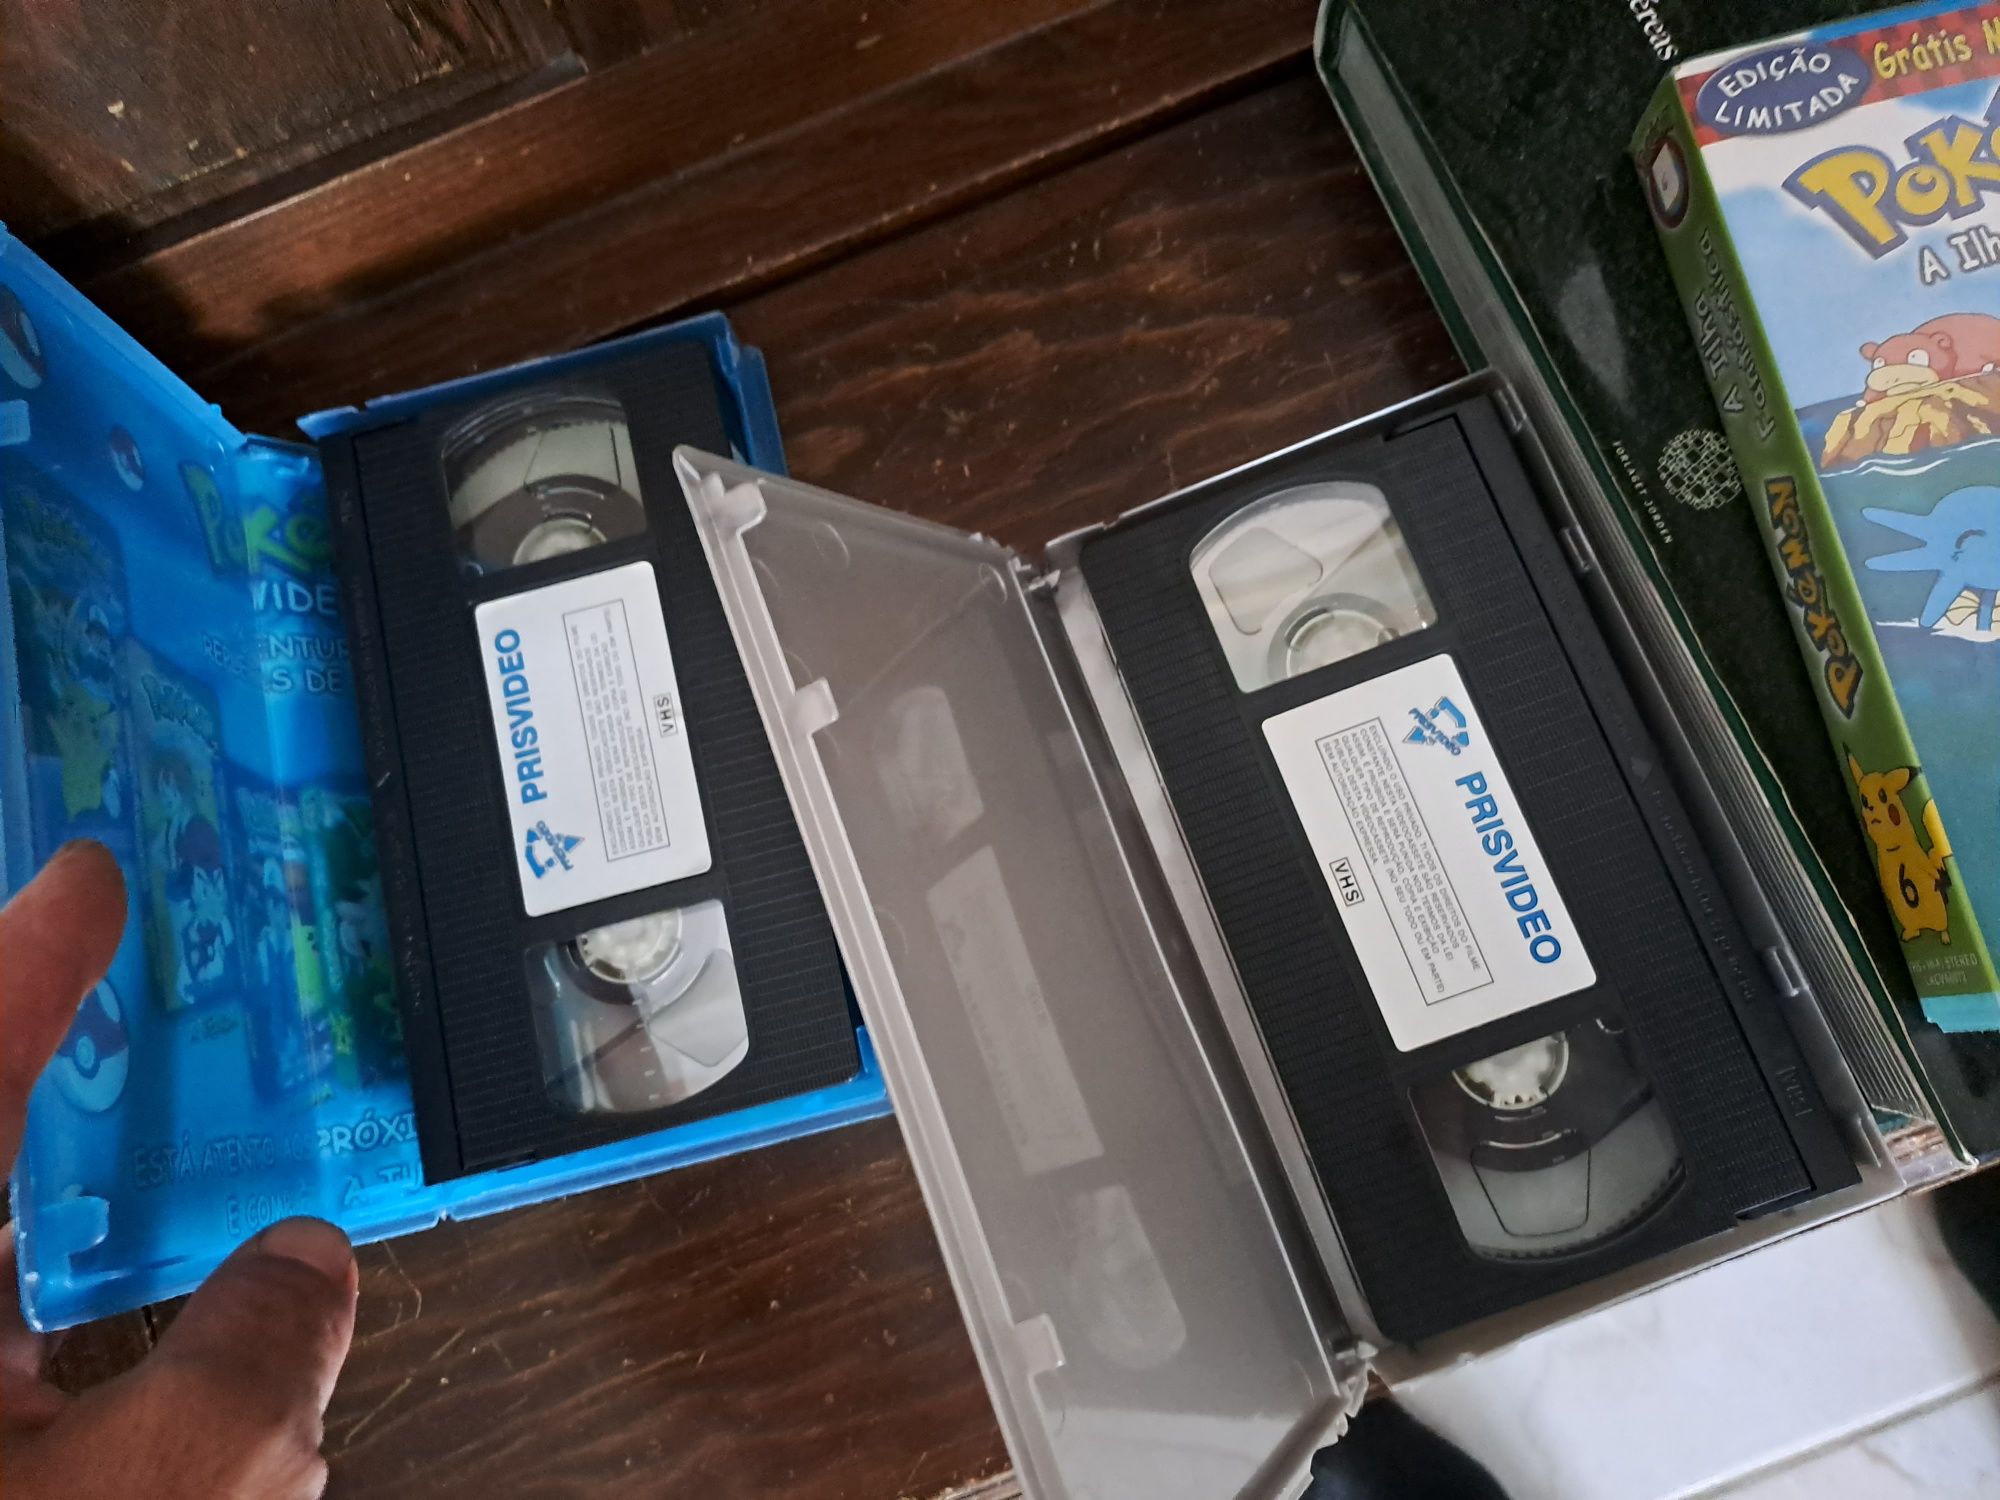 Pokémon VHS video